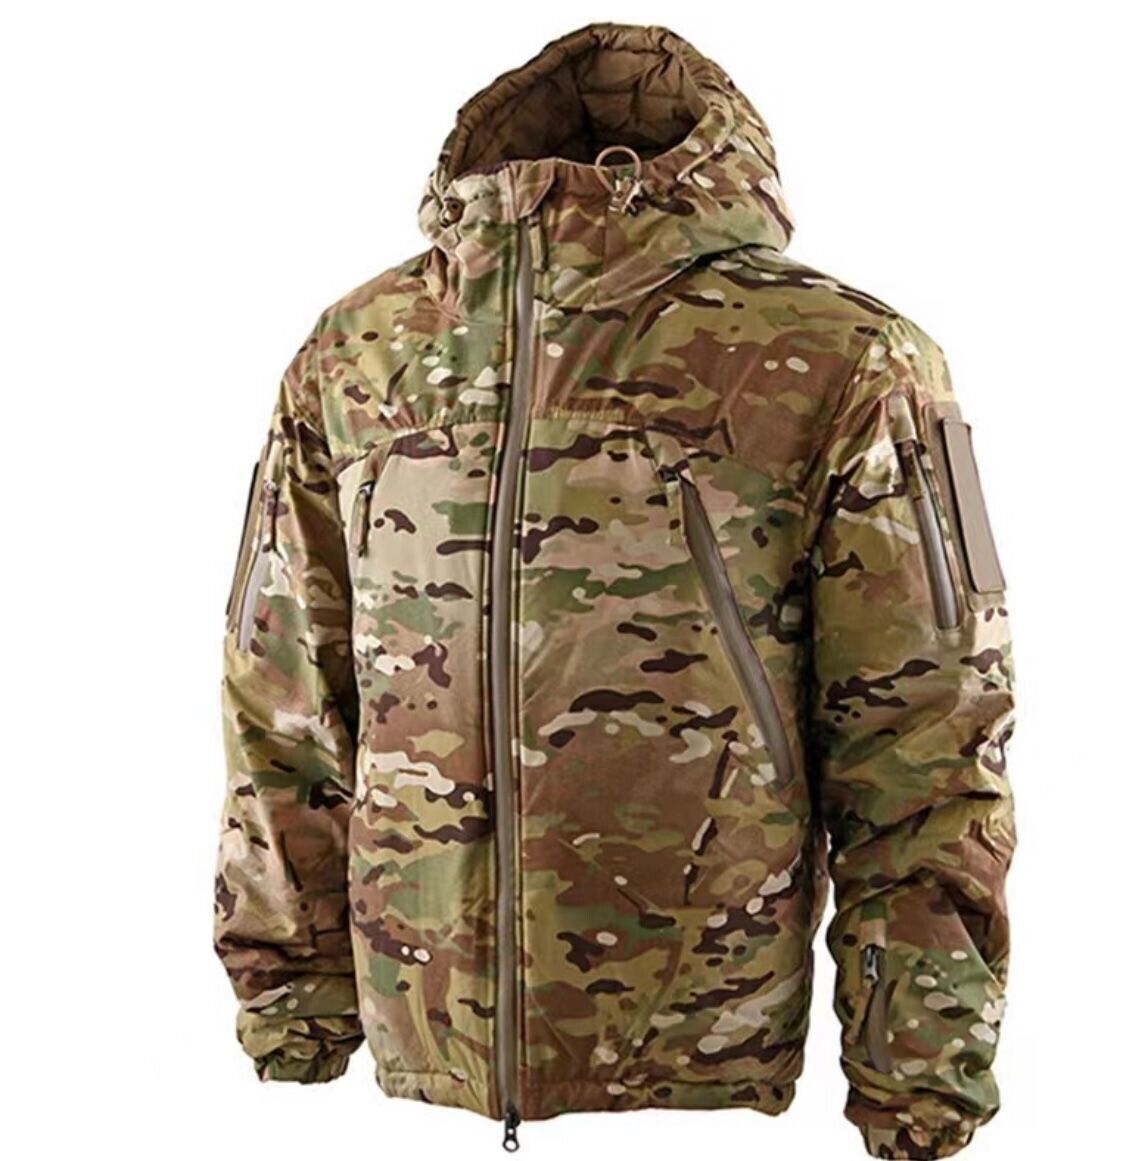 Winter tactical multicam jacket, men's winter waterproof jacket, windproof